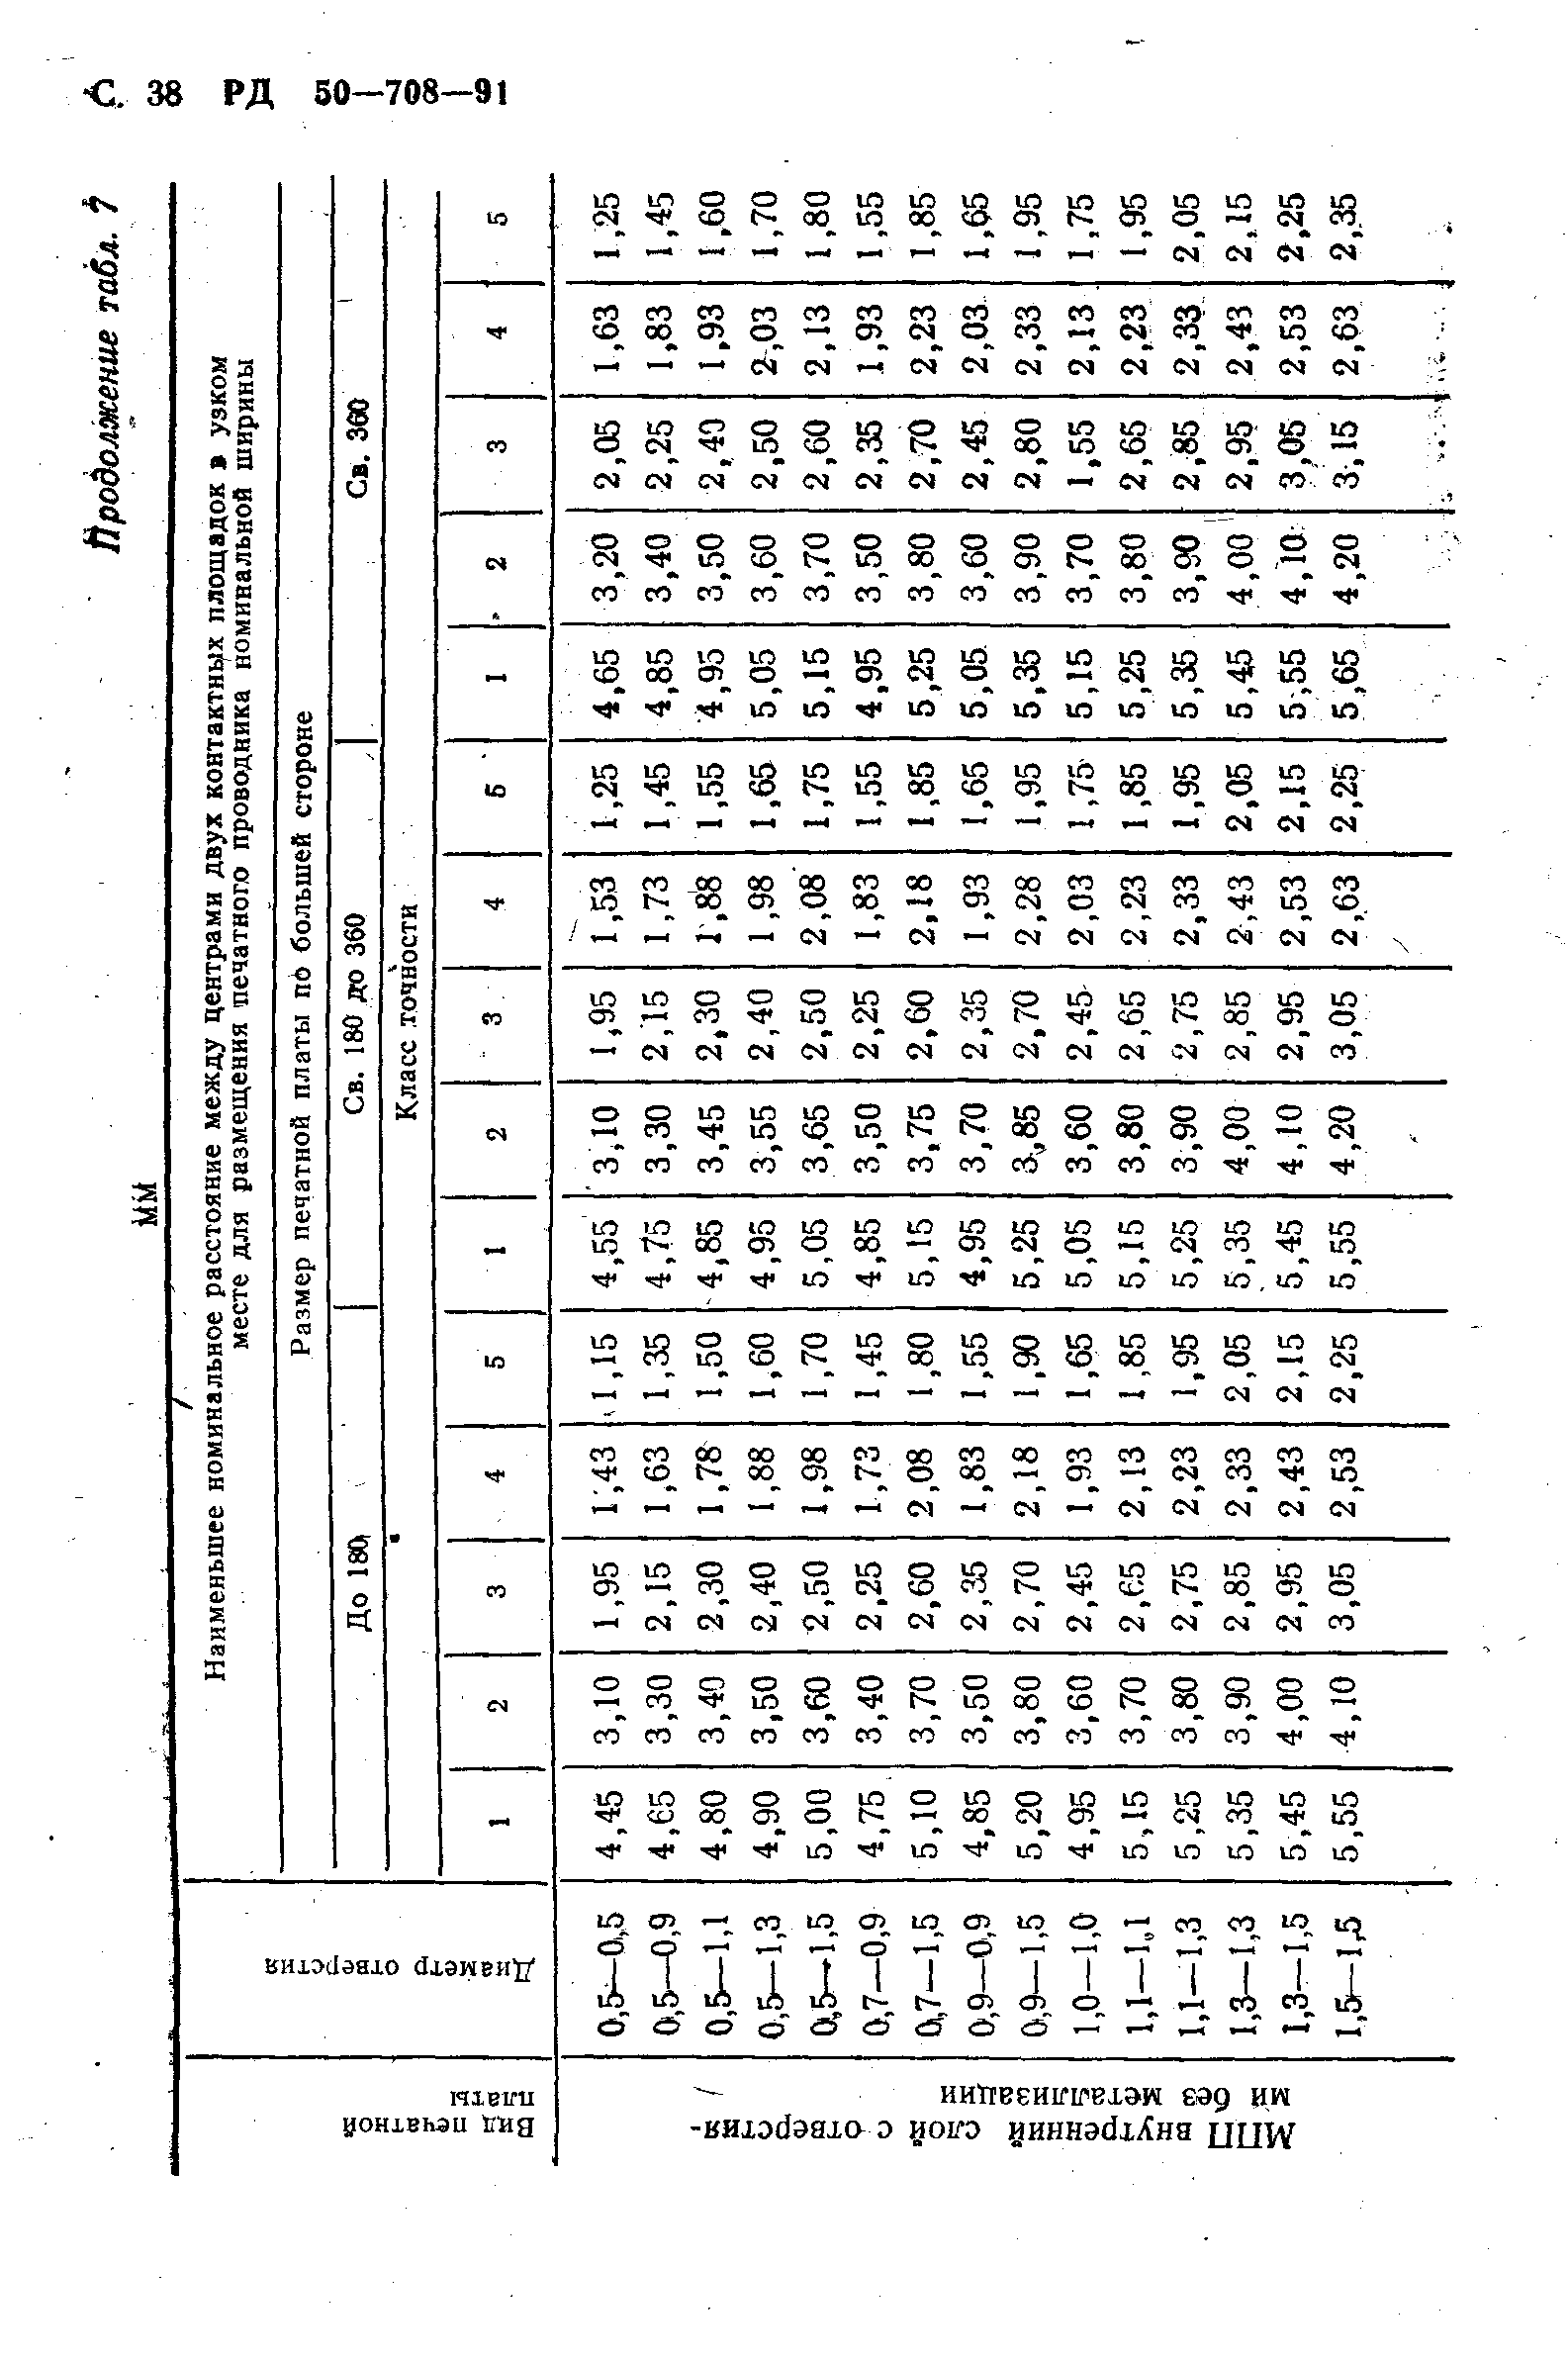 РД 50-708-91